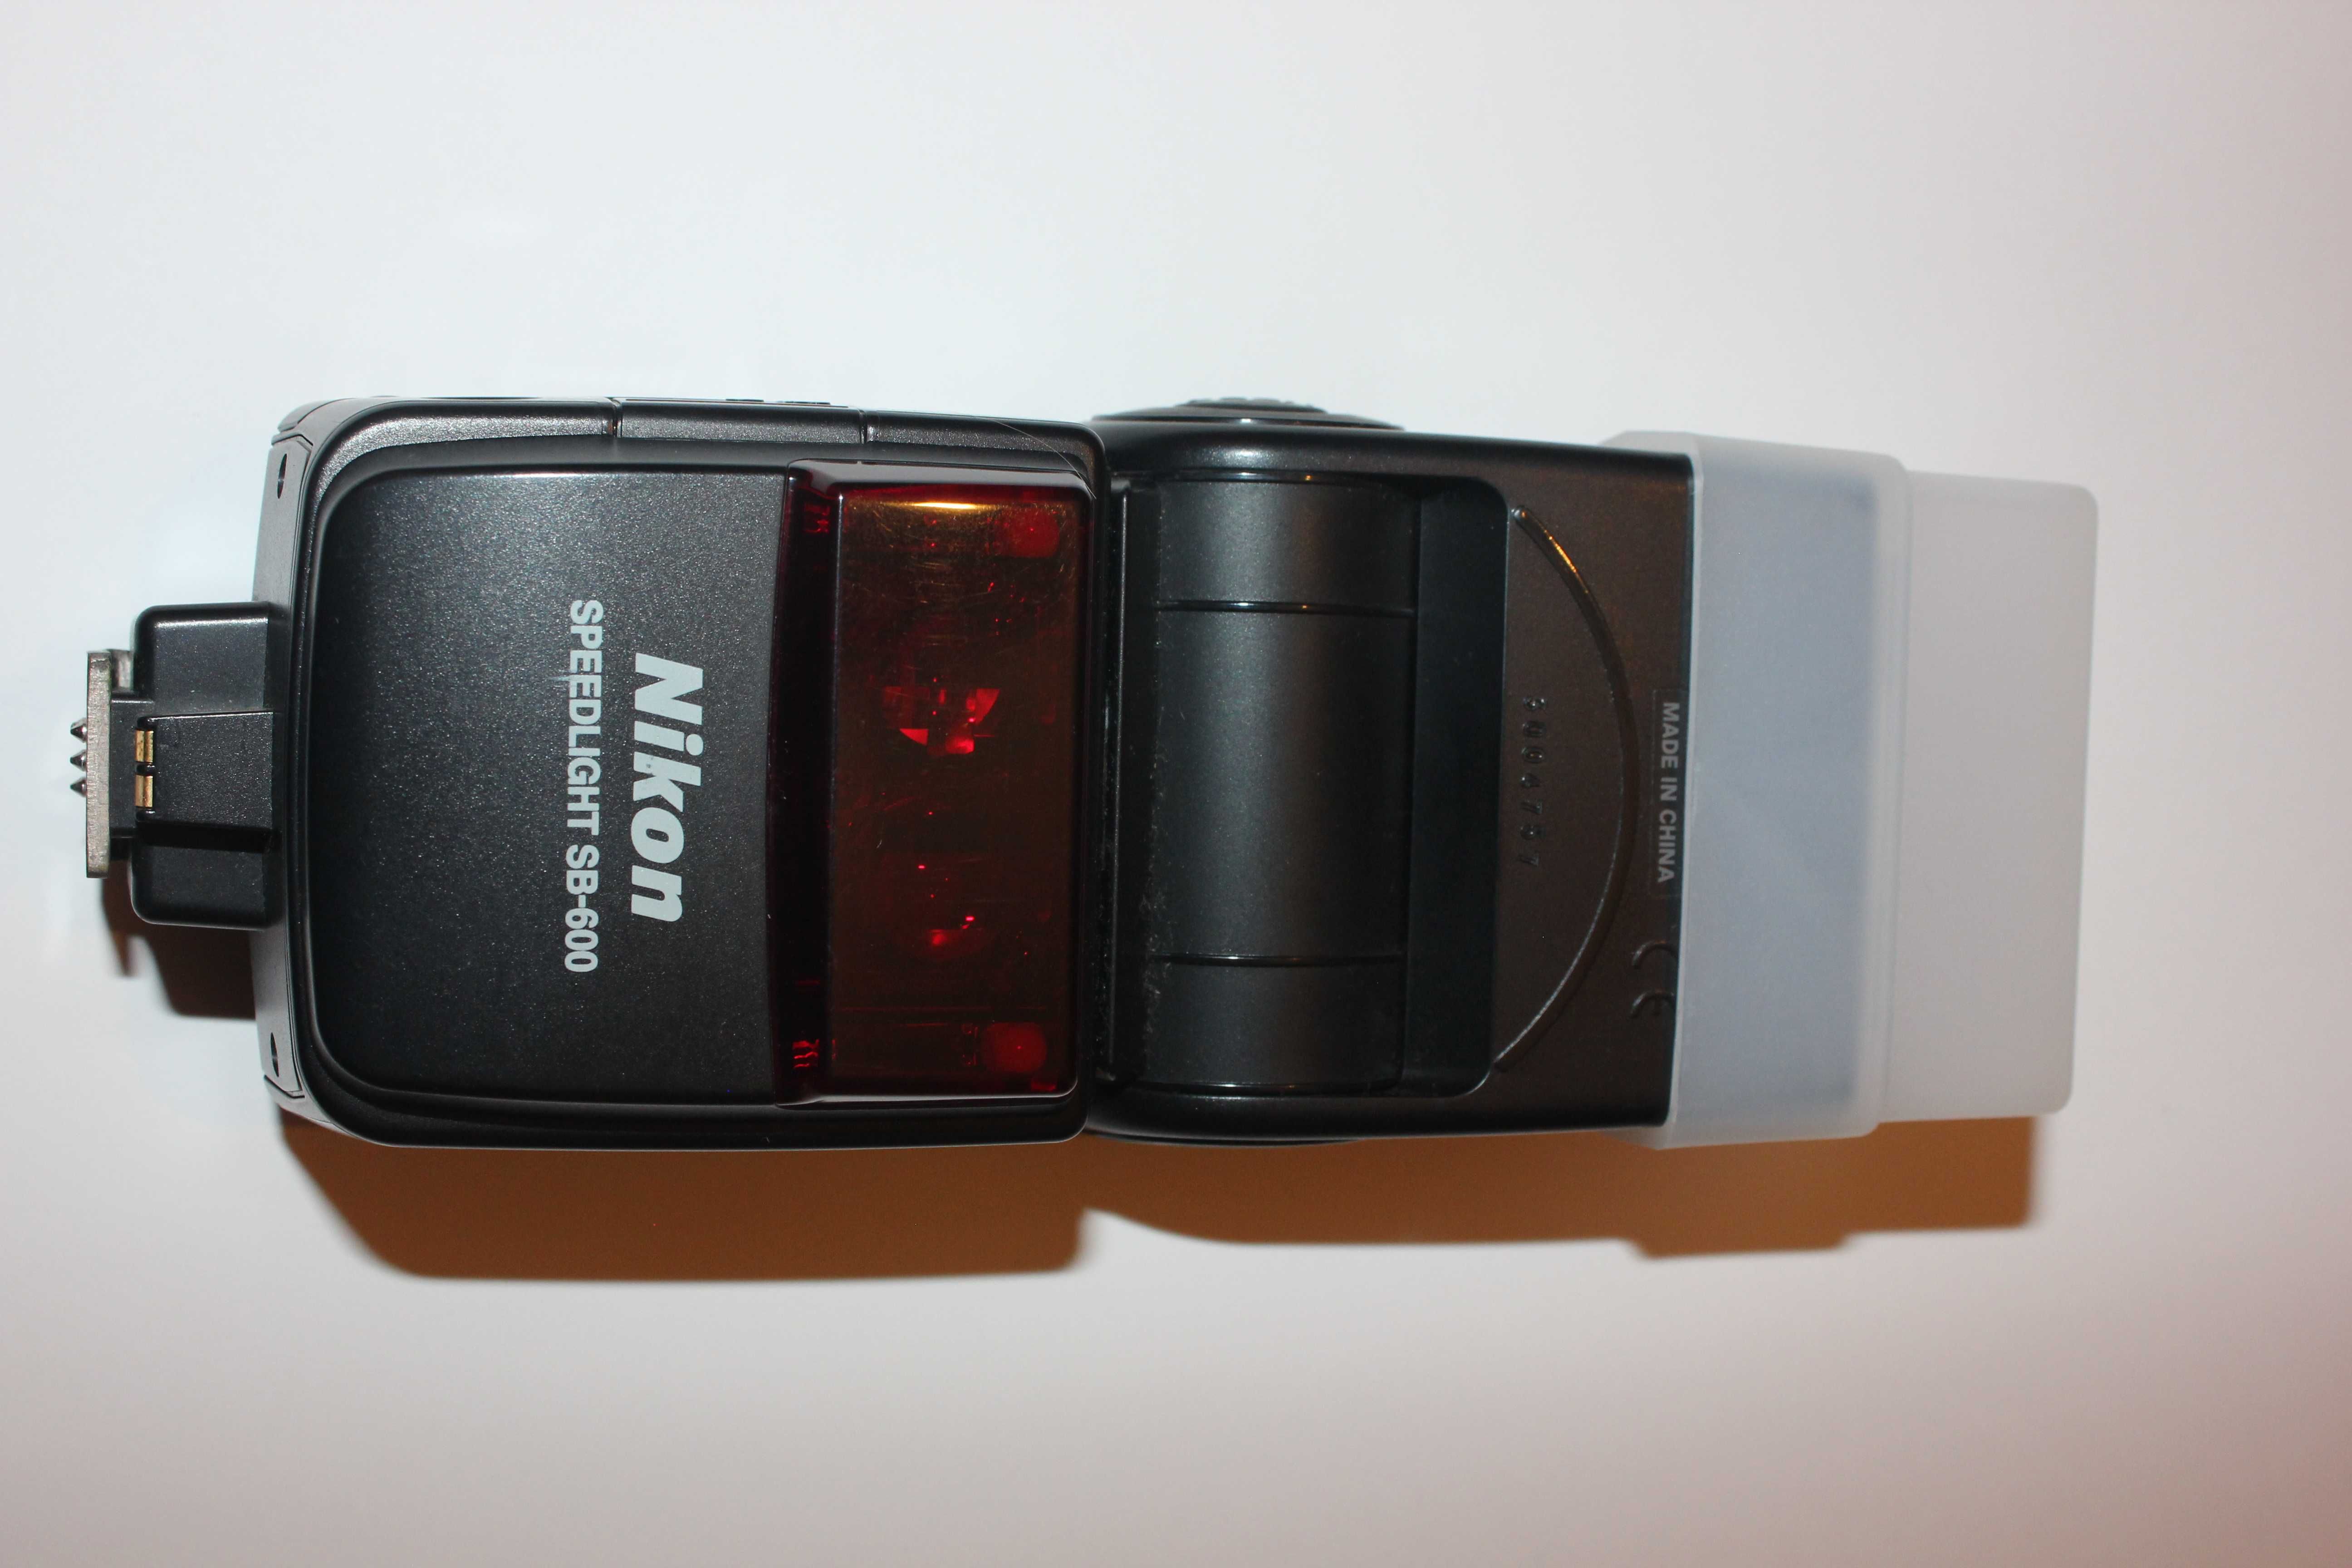 Nikon D5200 com Lentes Nikon 18-55mm e Tokina 11-16mm mais Acessórios!